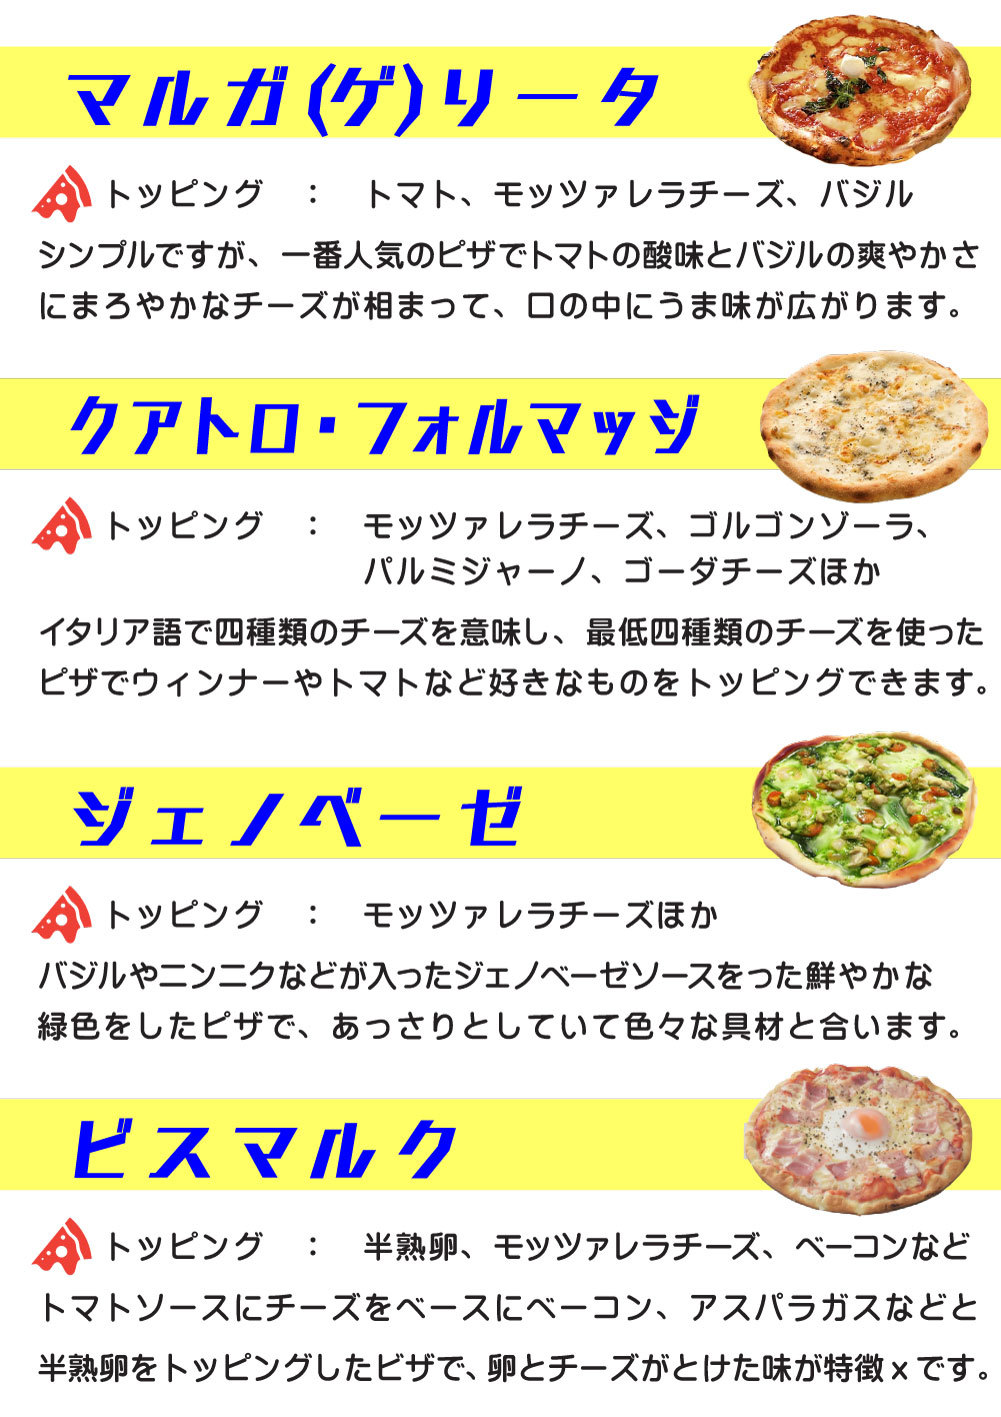 7~8_V101-ピザのコト-(カラー)2